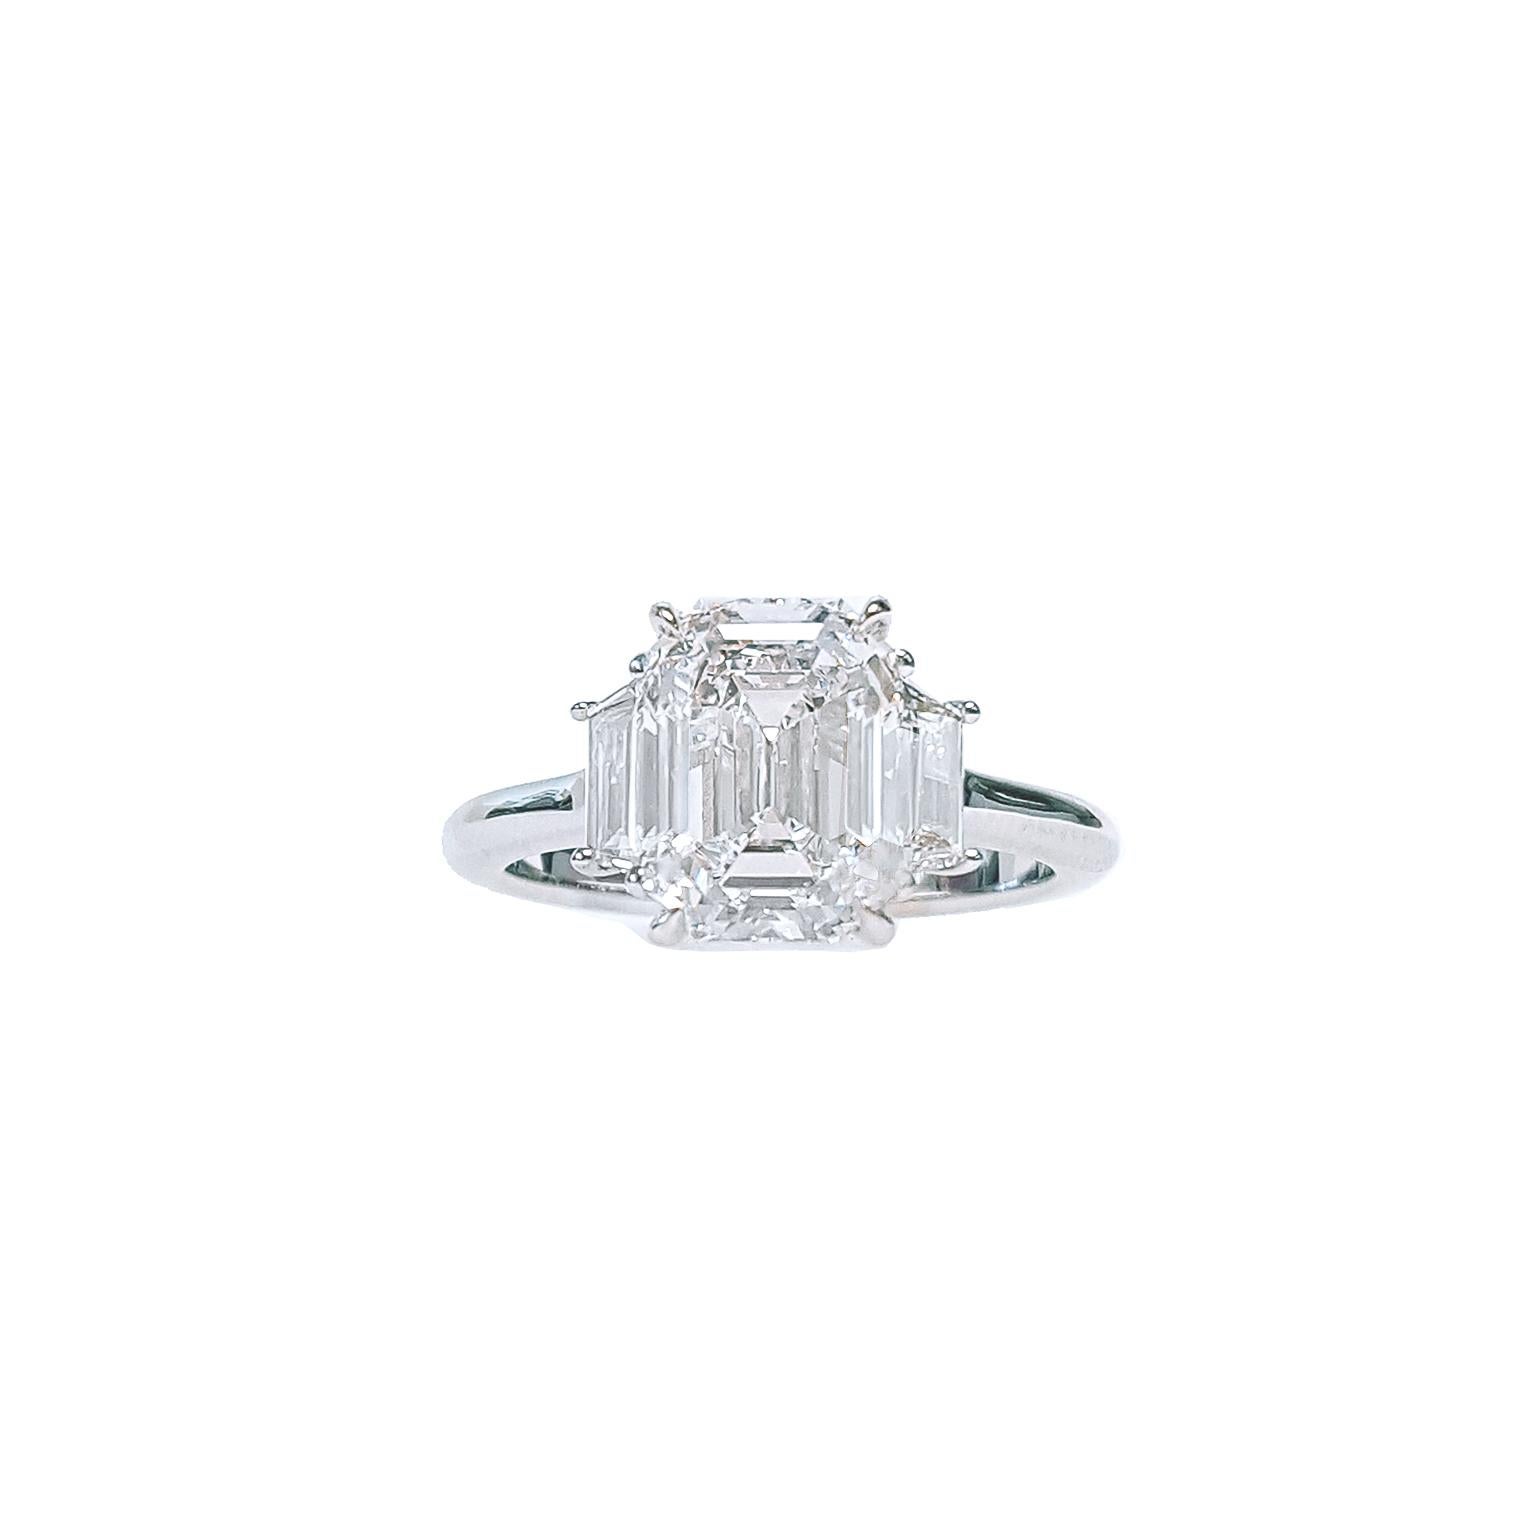 Magnifique bague de fiançailles à trois pierres serties d'un diamant de 3,02 carats taillé en émeraude et certifié par le GIA de couleur D et de pureté VS1. Le diamant central est élégamment accompagné de deux diamants de taille trapézoïdale d'un